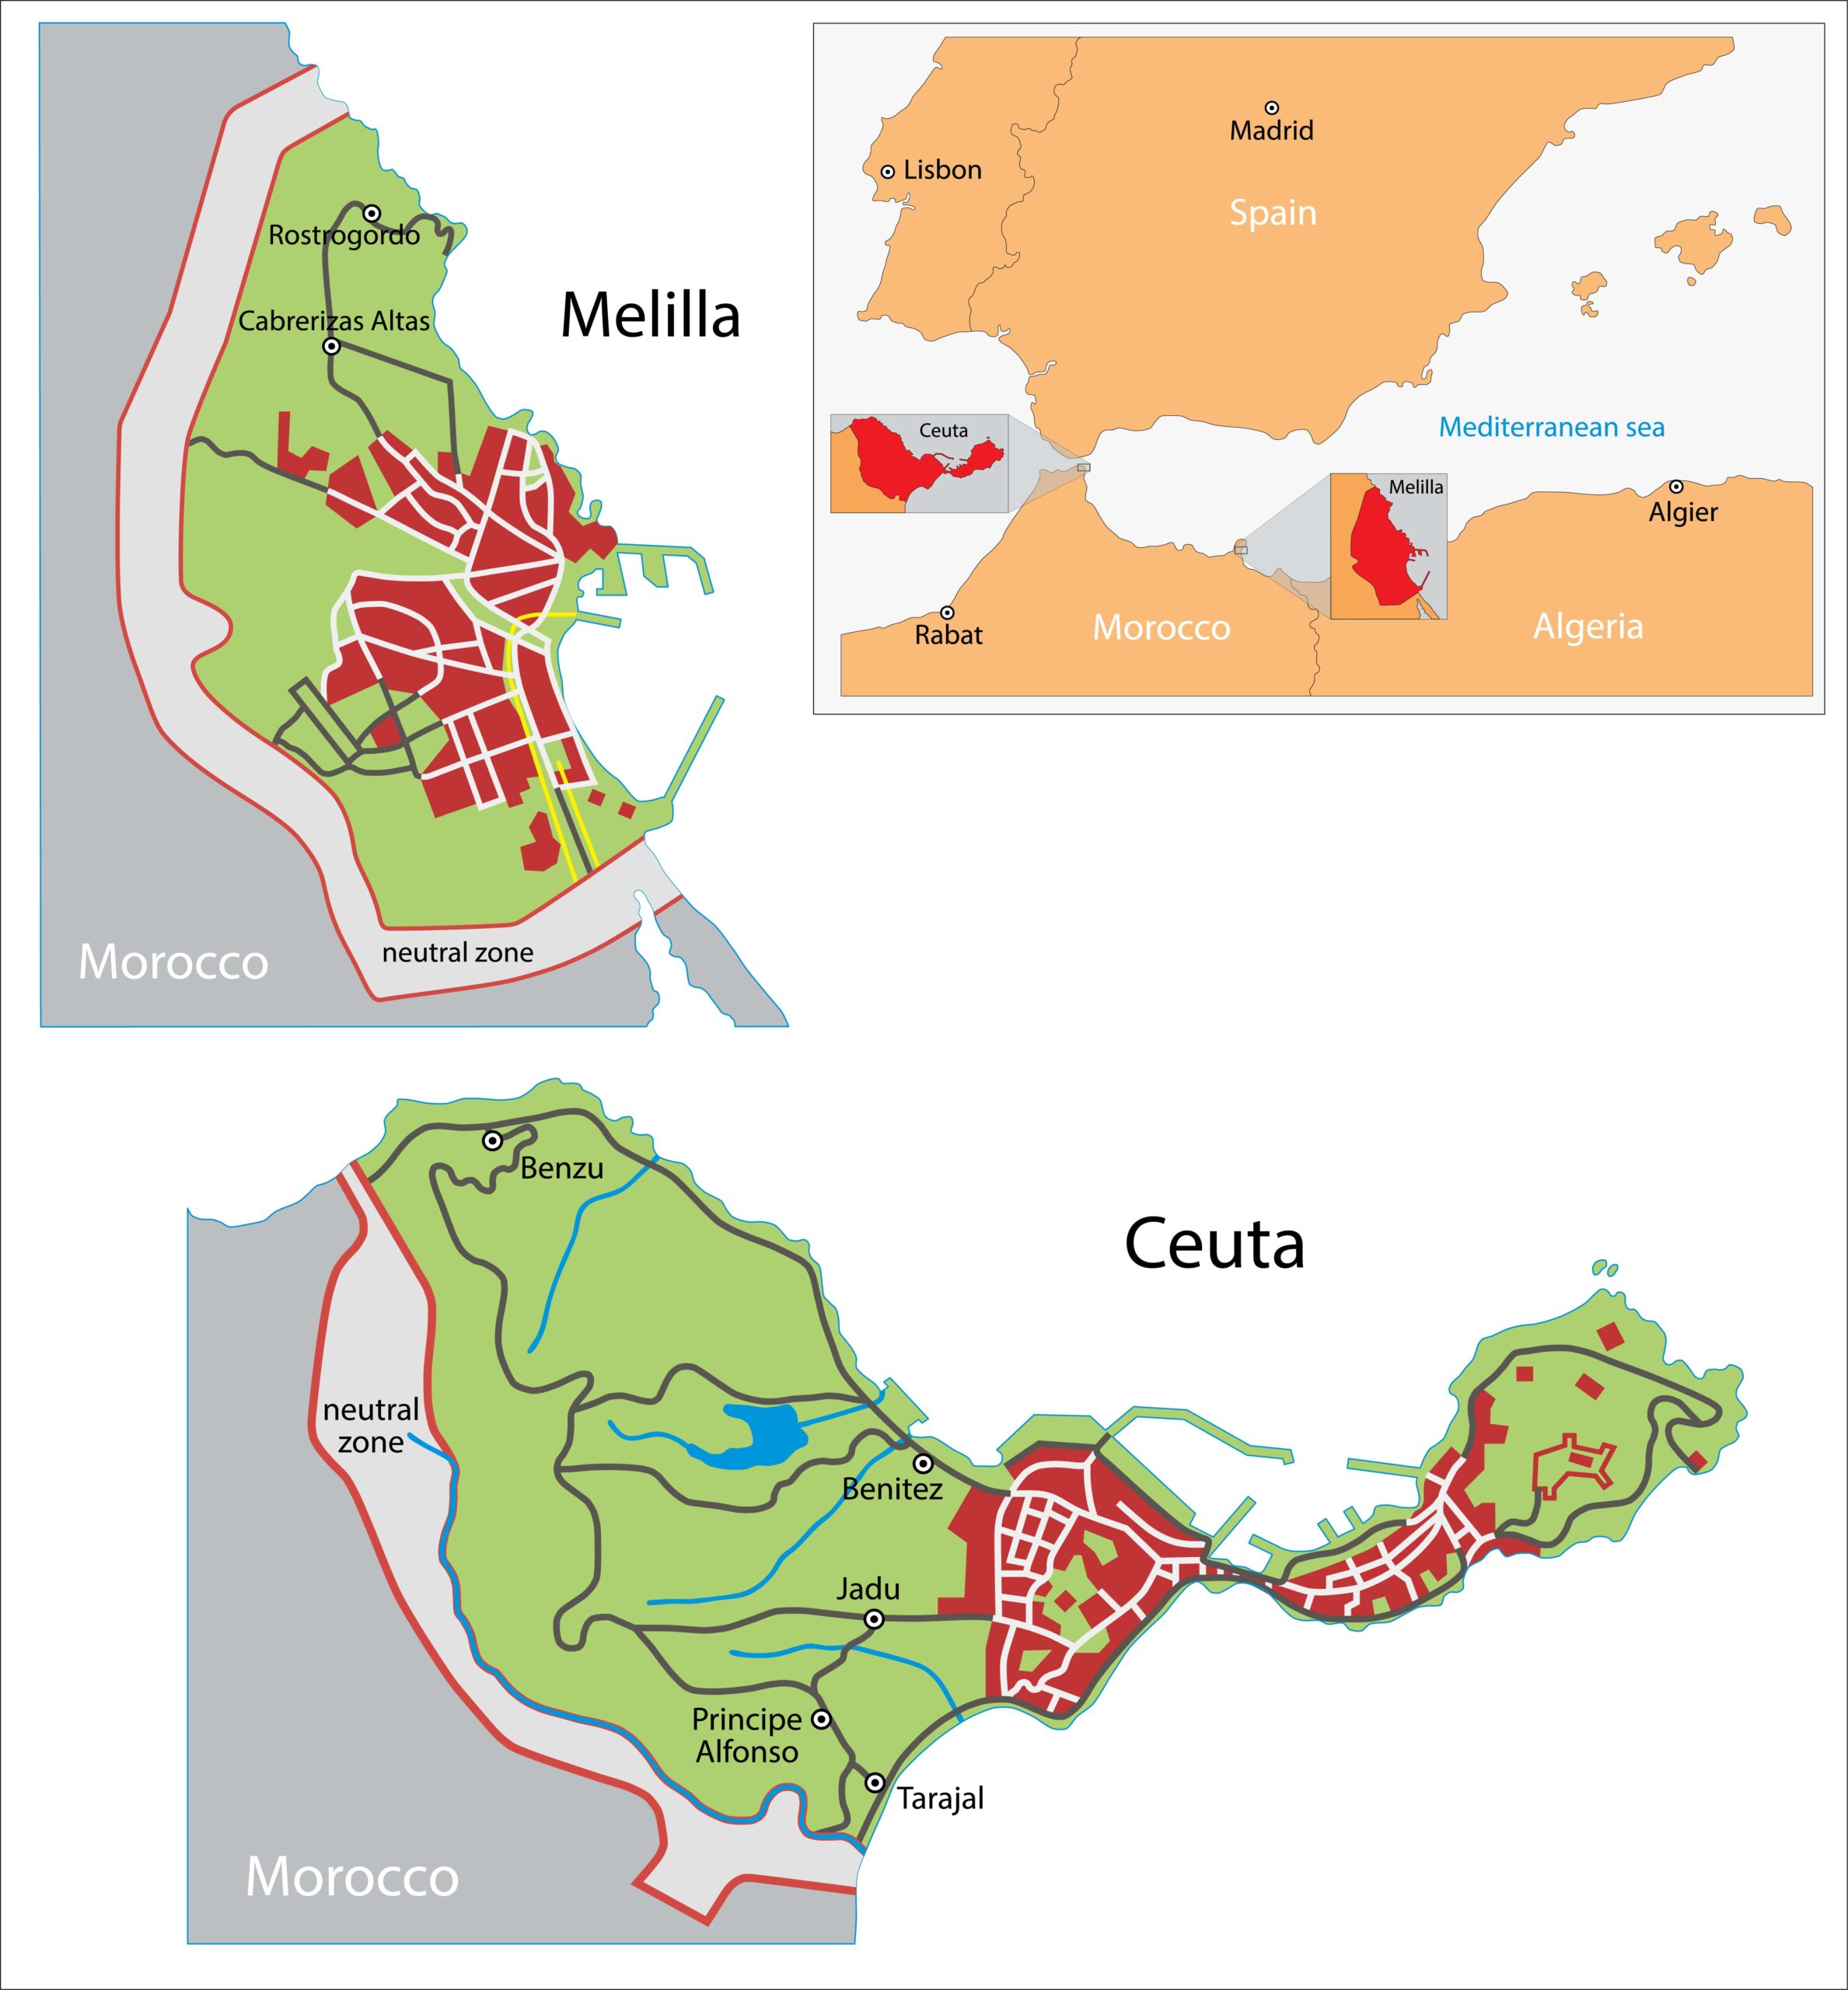 De enclaves Ceuta en Melilla